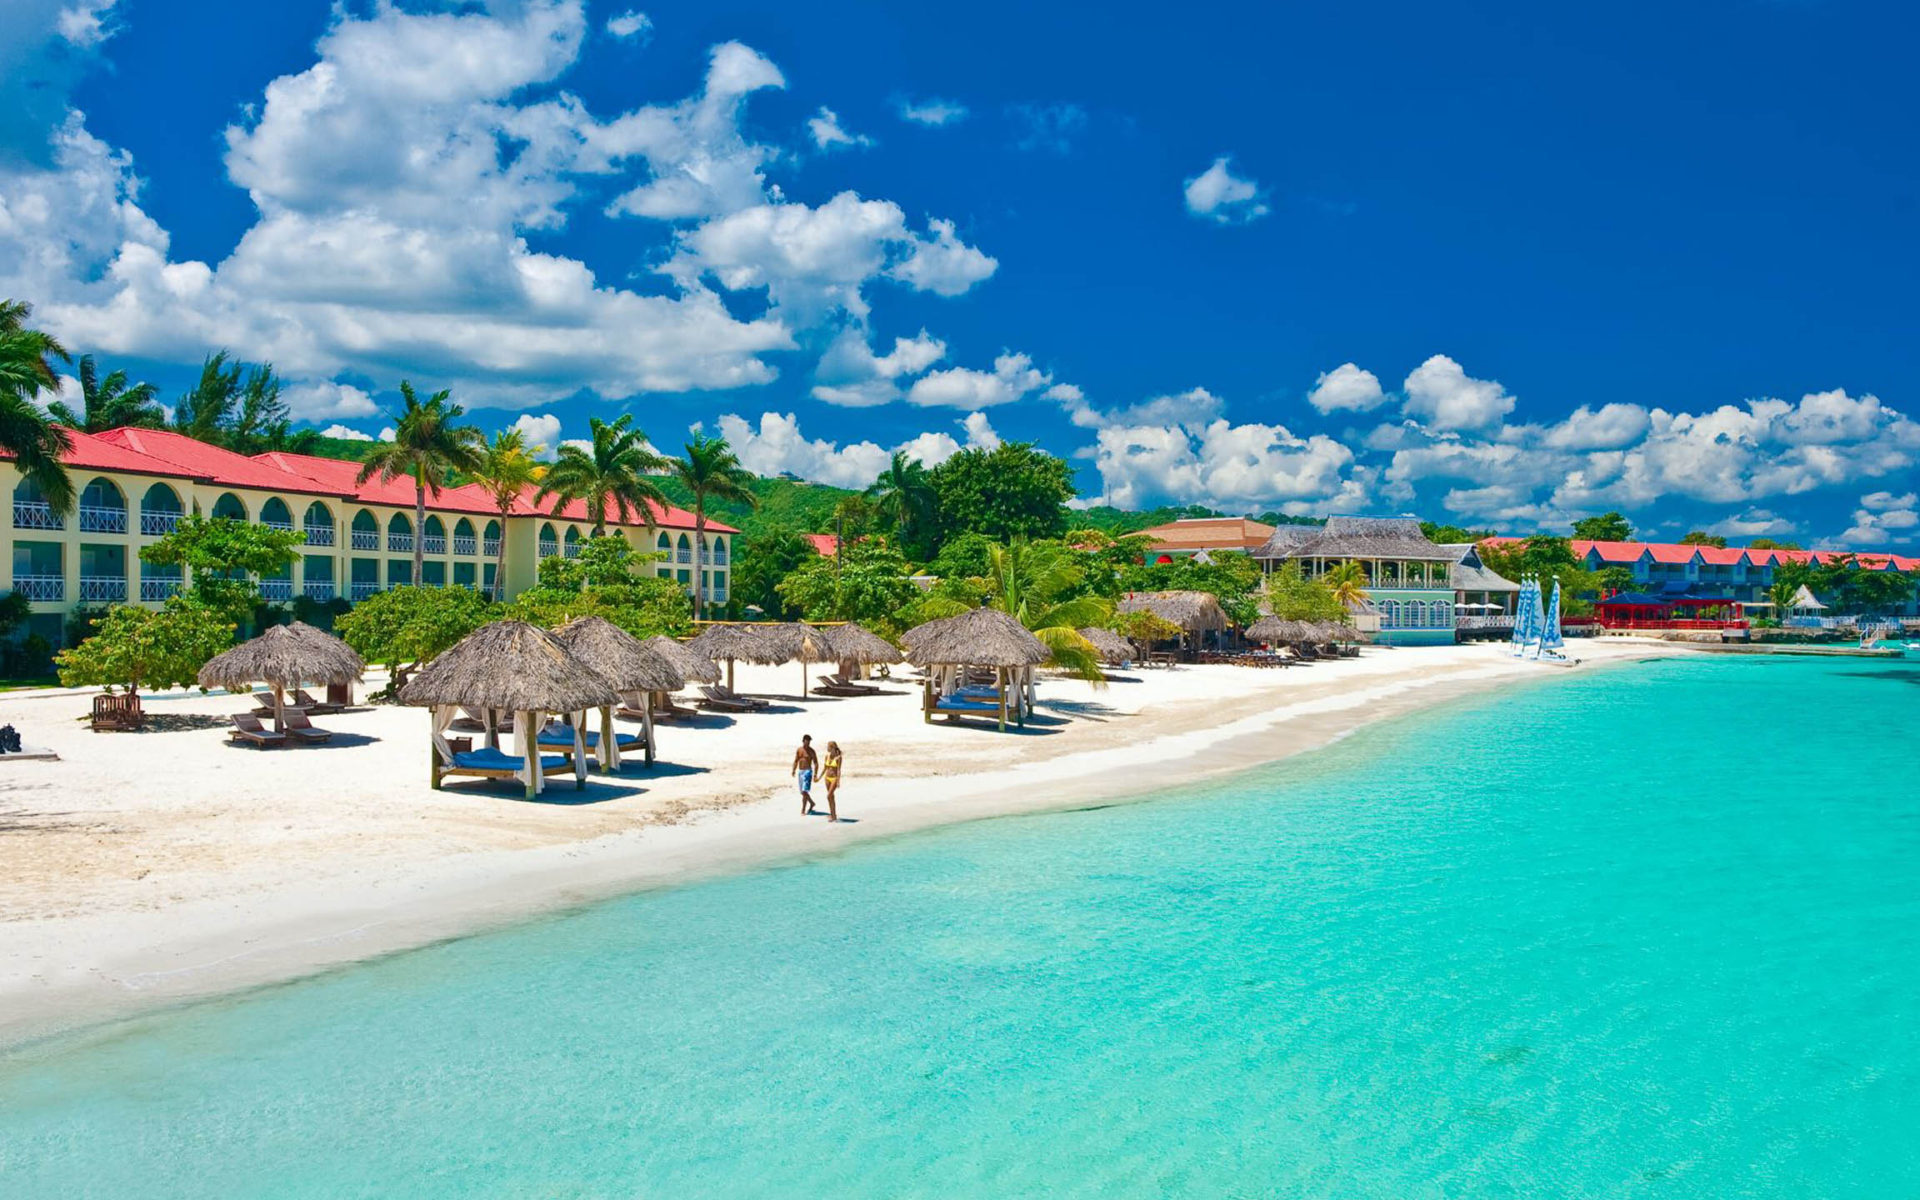 Sandals Montego Bay, White sand beach, Best beach in Jamaica, Exquisite resort, 1920x1200 HD Desktop